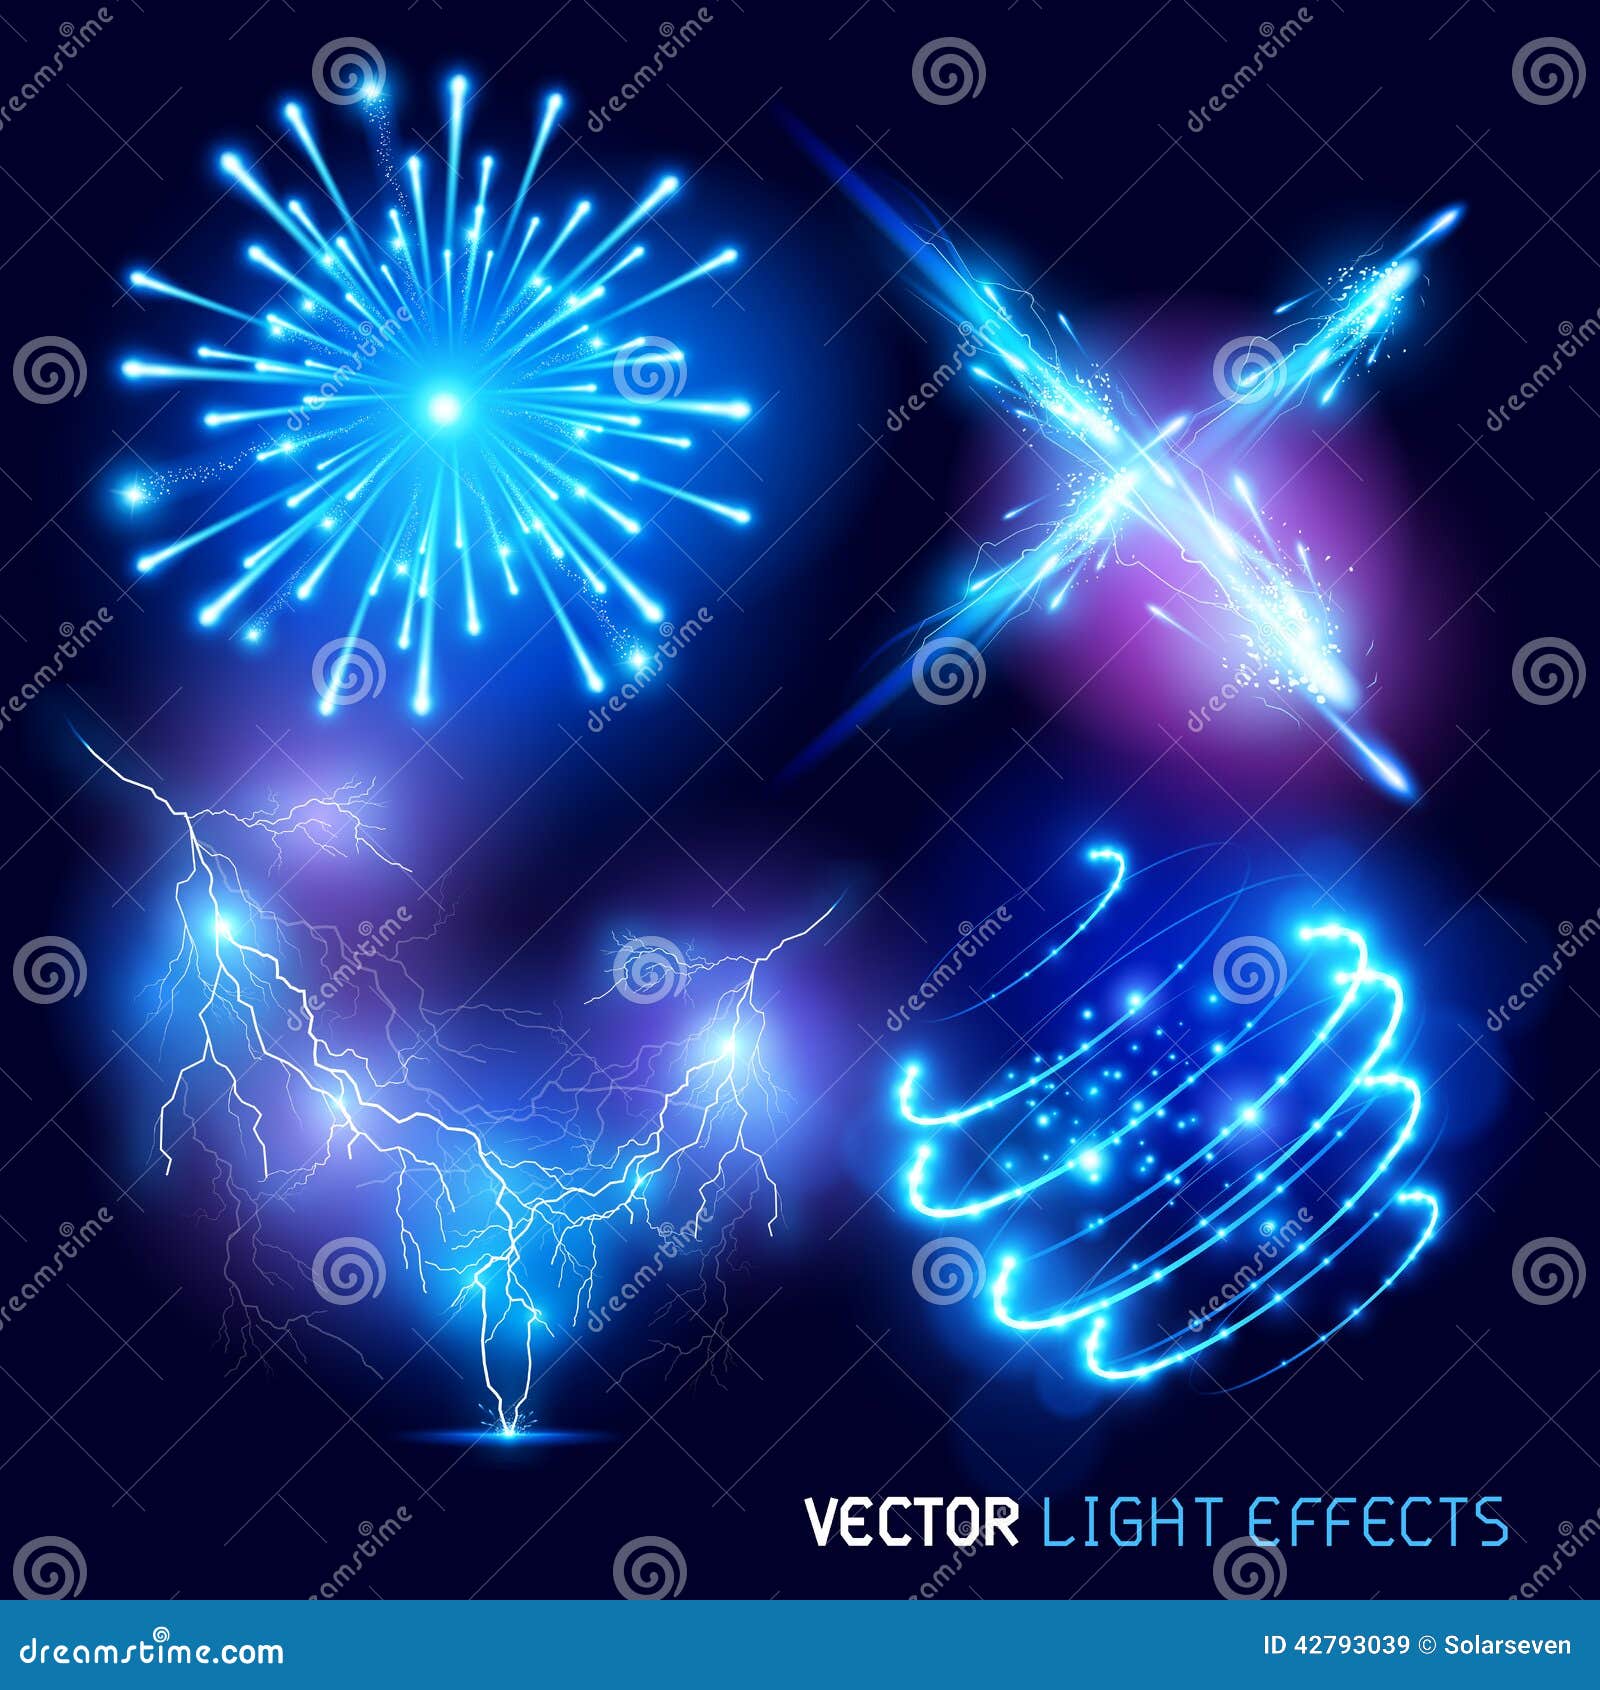  light effects